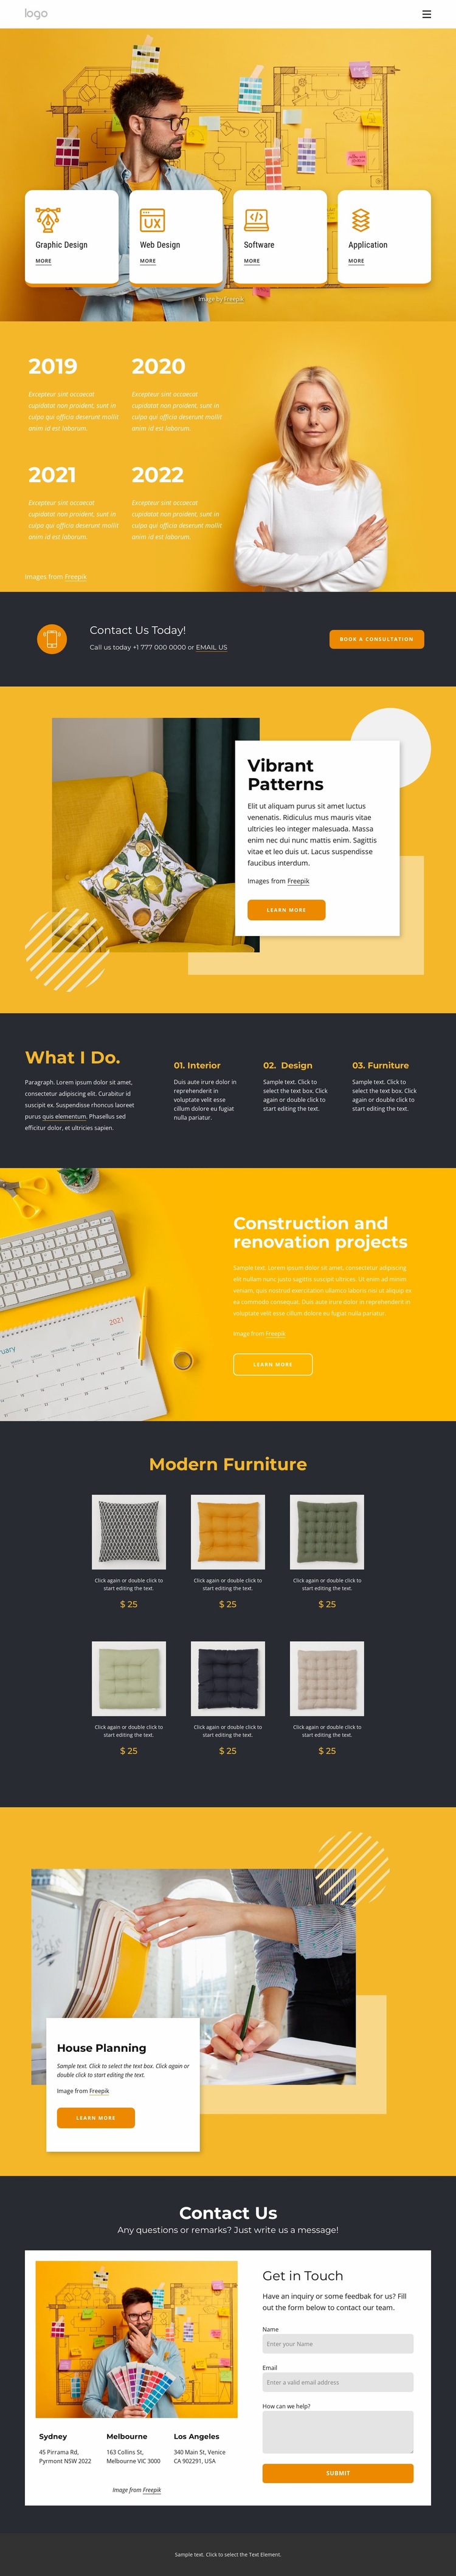 Modern design firm Website Builder Templates